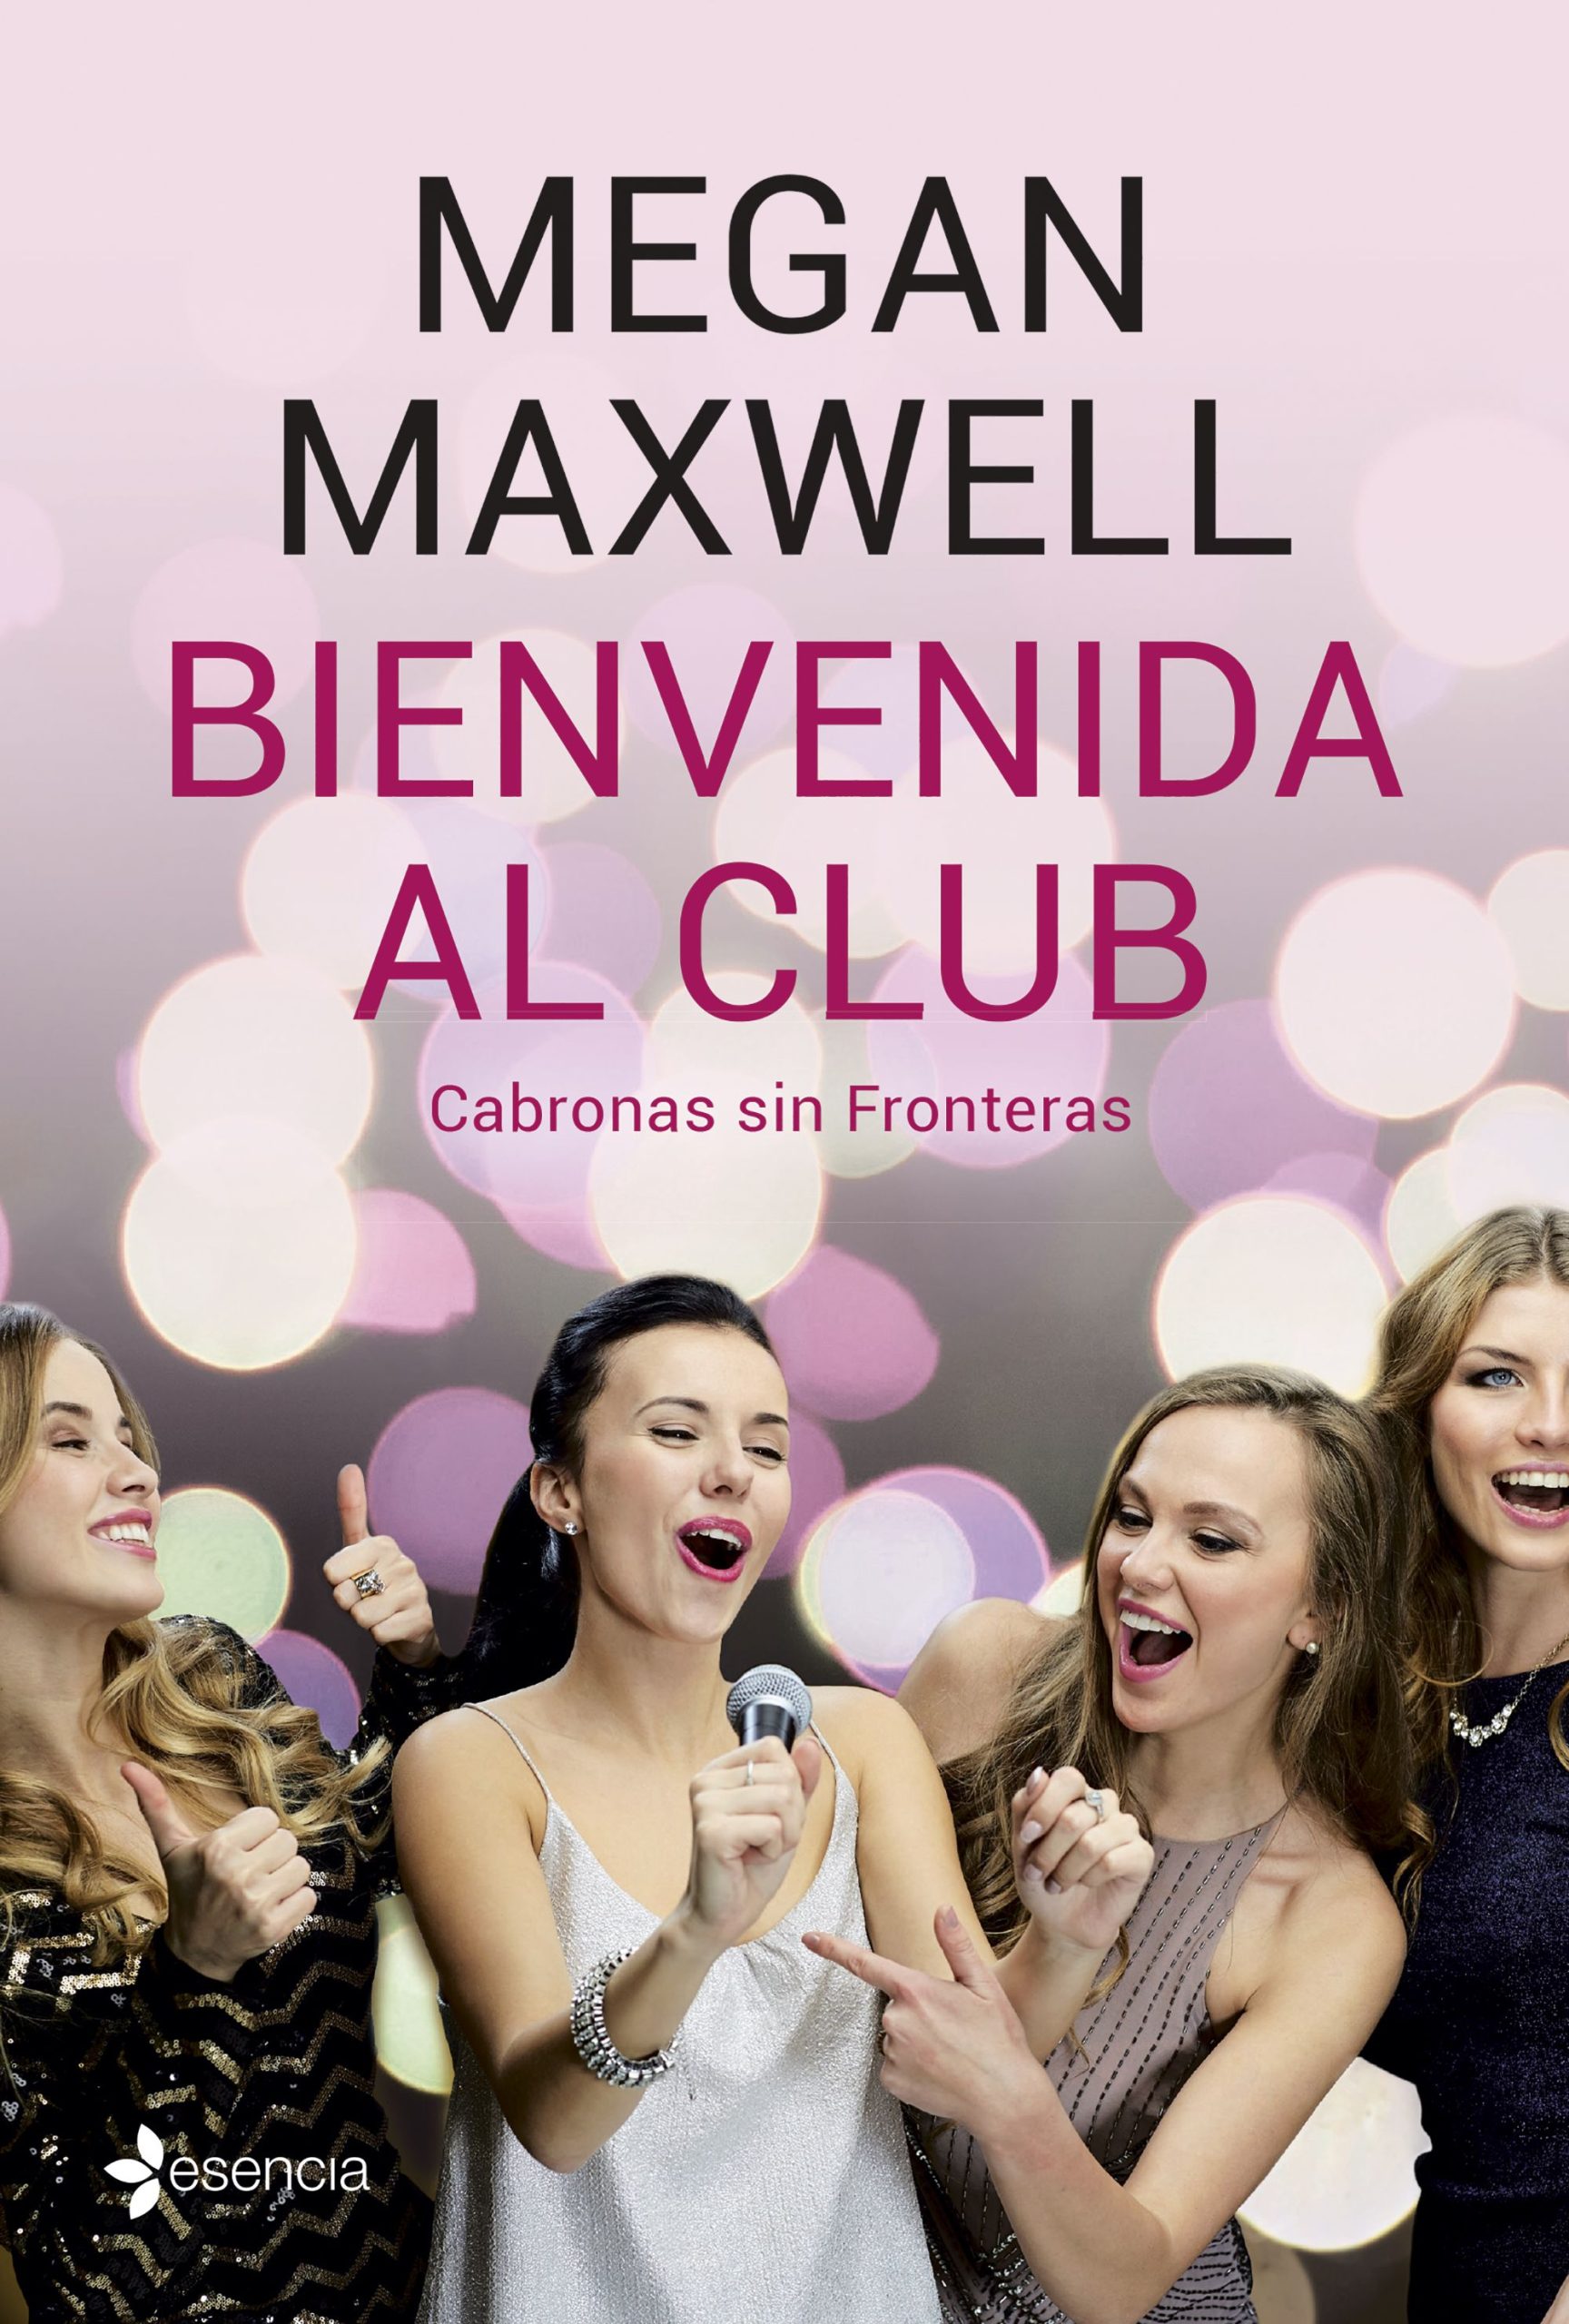 Bienvenida al club cabronas sin fronteras - Megan Maxwell - Esencia - 9786124648724